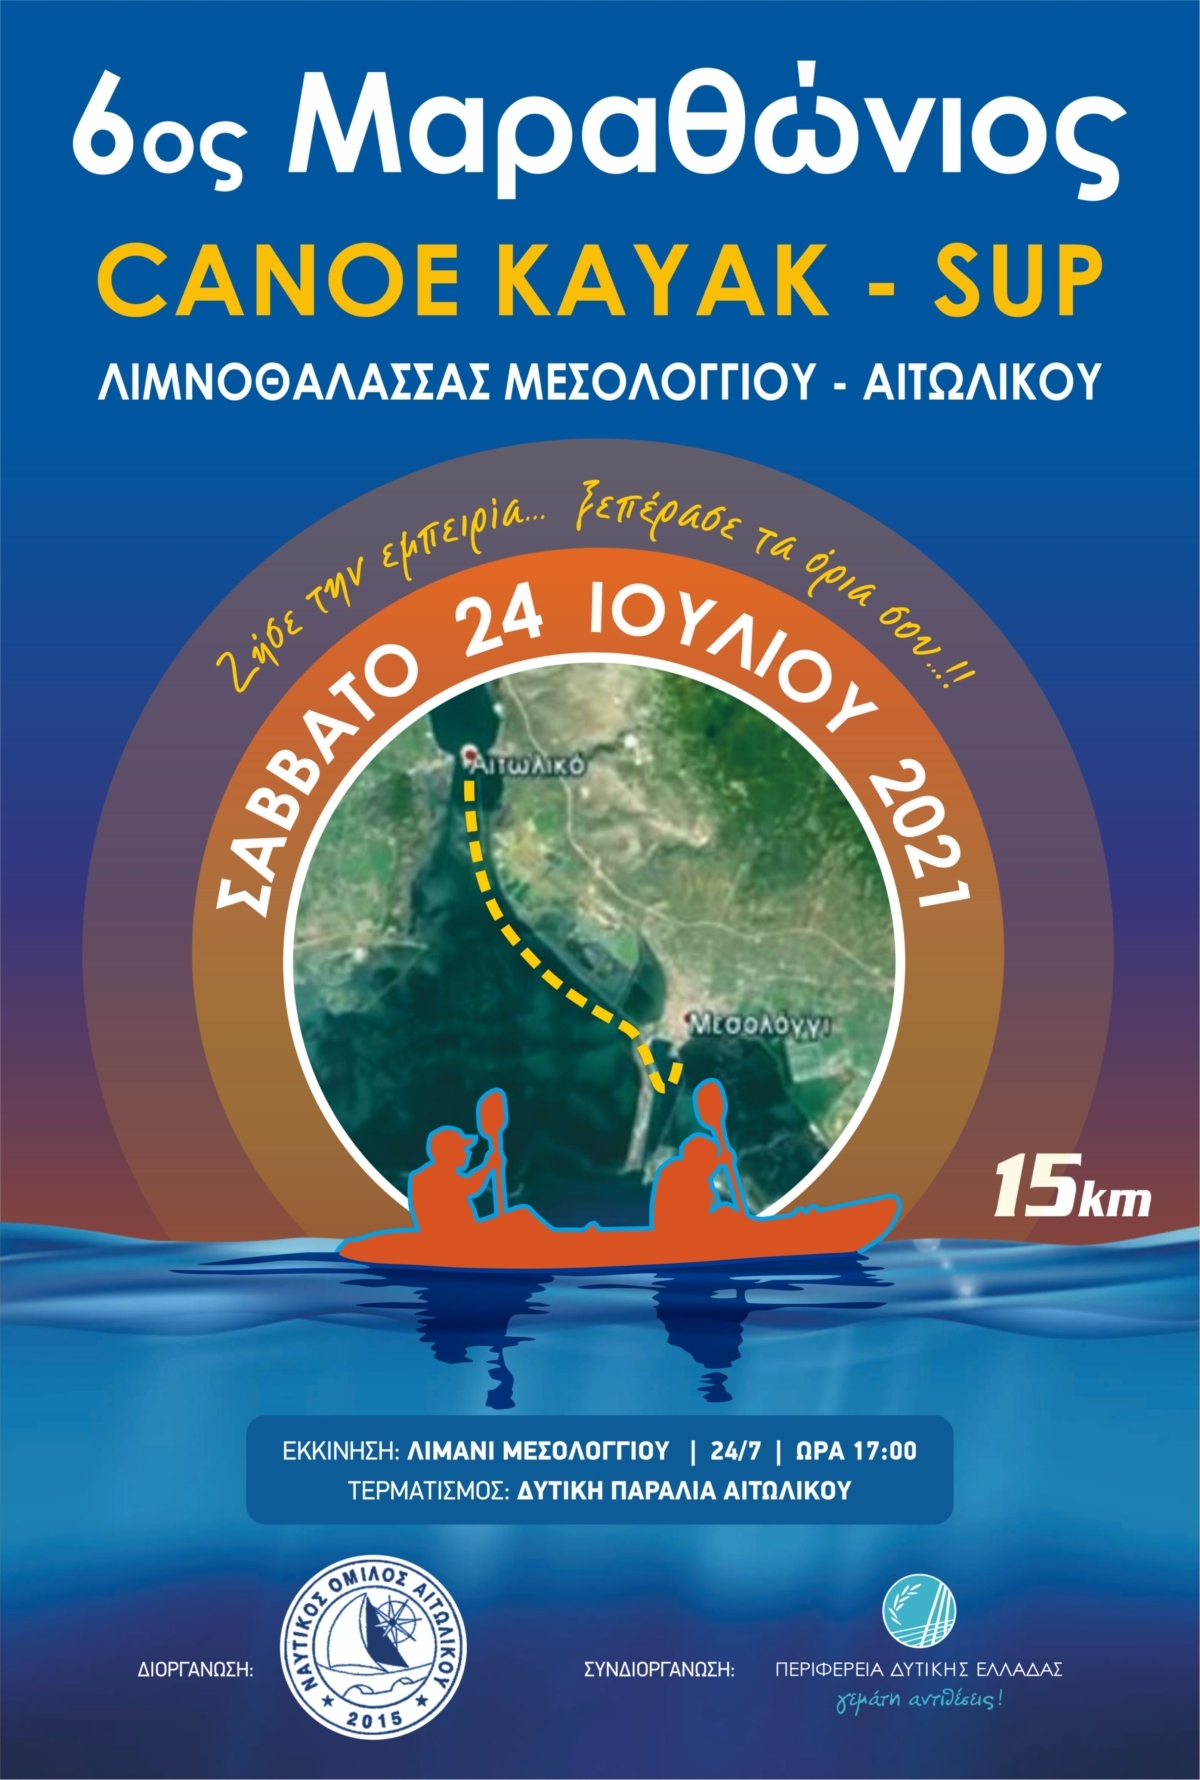 6ος Μαραθώνιος αγώνας κανόε καγιάκ open race στη Λιμνοθάλασσα Μεσολογγίου-Αιτωλικού (Σαβ 24/7/2021)